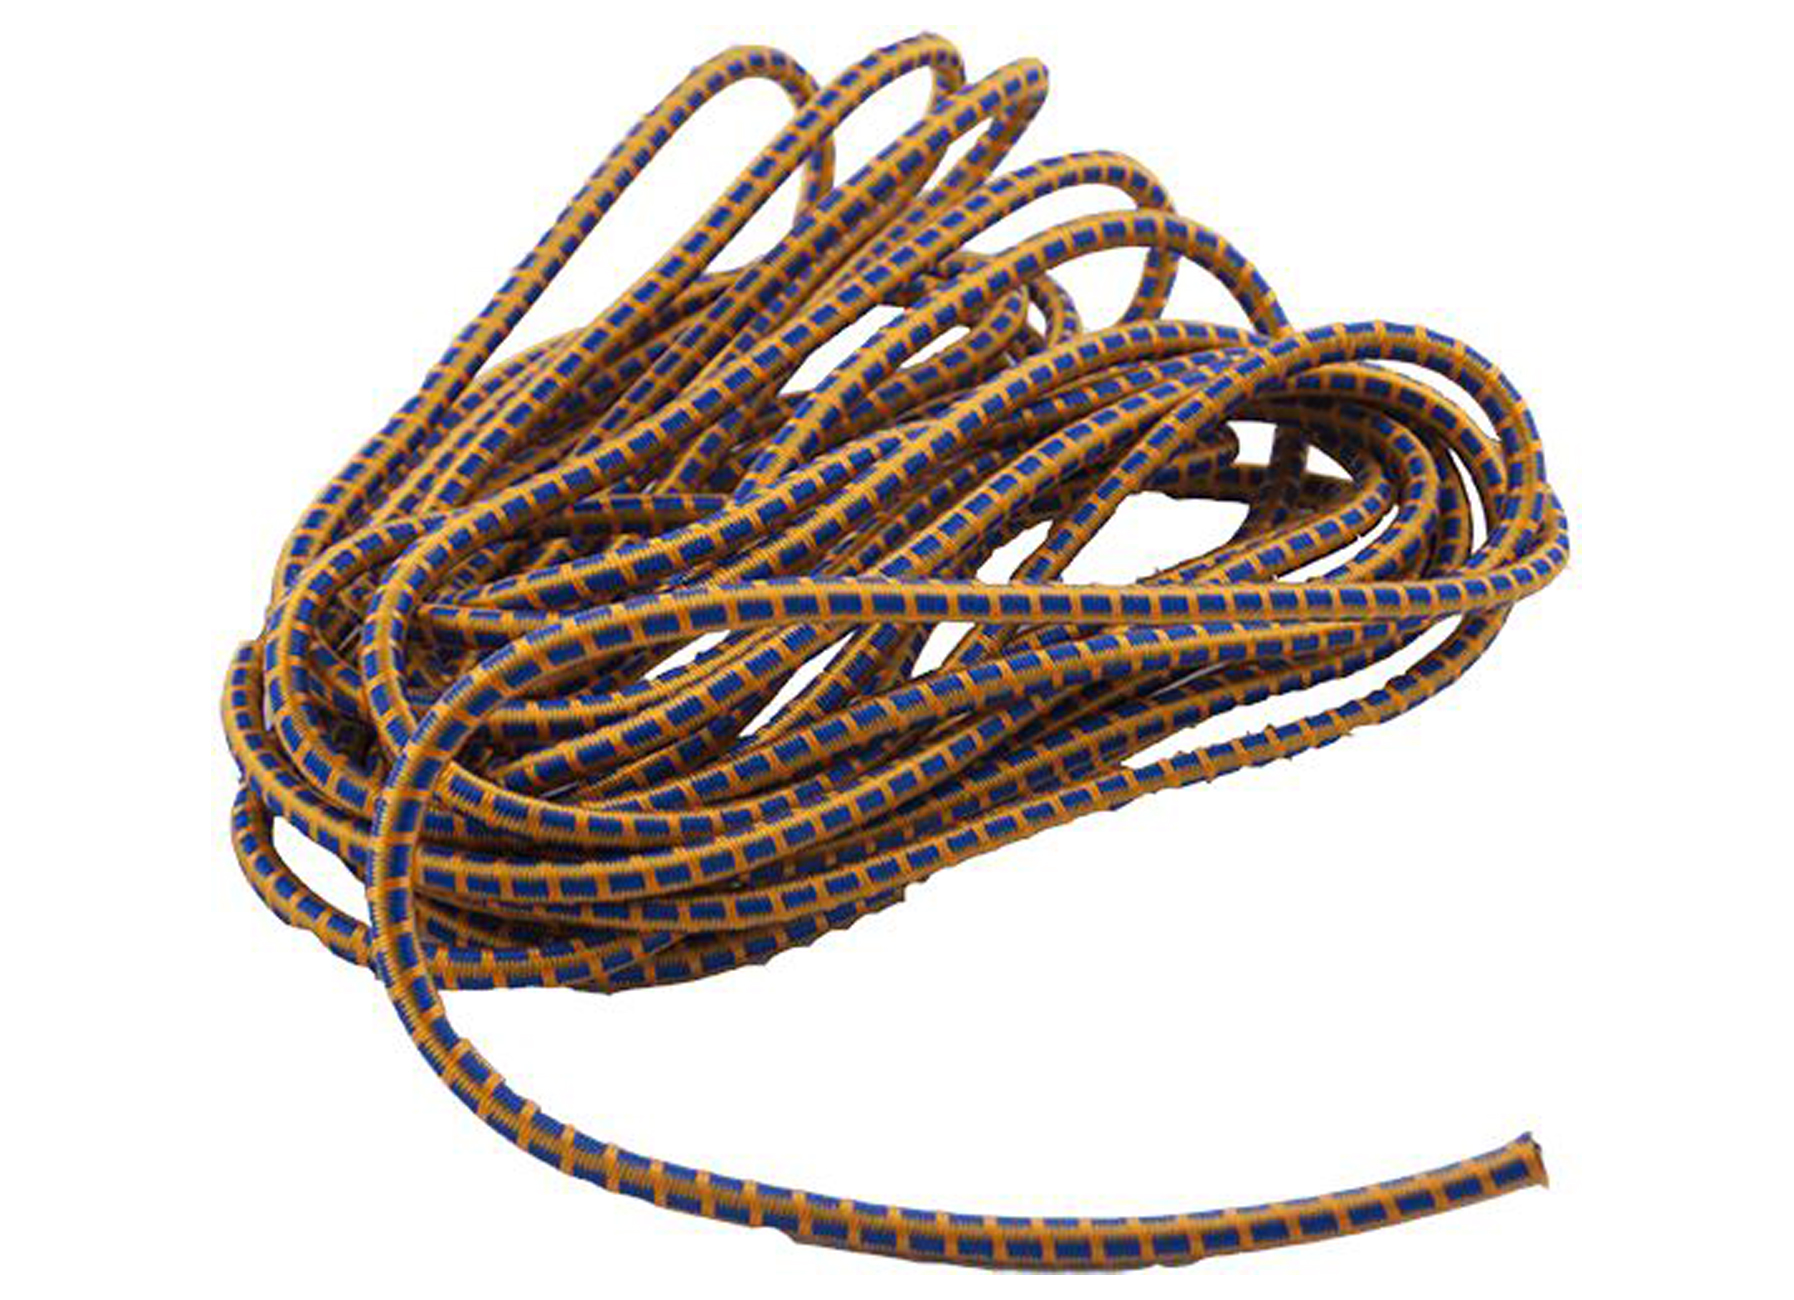 Gemengd Nageslacht Macadam Elastiek 10m Assortiment Kleuren - bevestigingen - mechanische bevestiging  - kettingen kabel koord - spanbanden - elastiek 10m assortiment kleuren